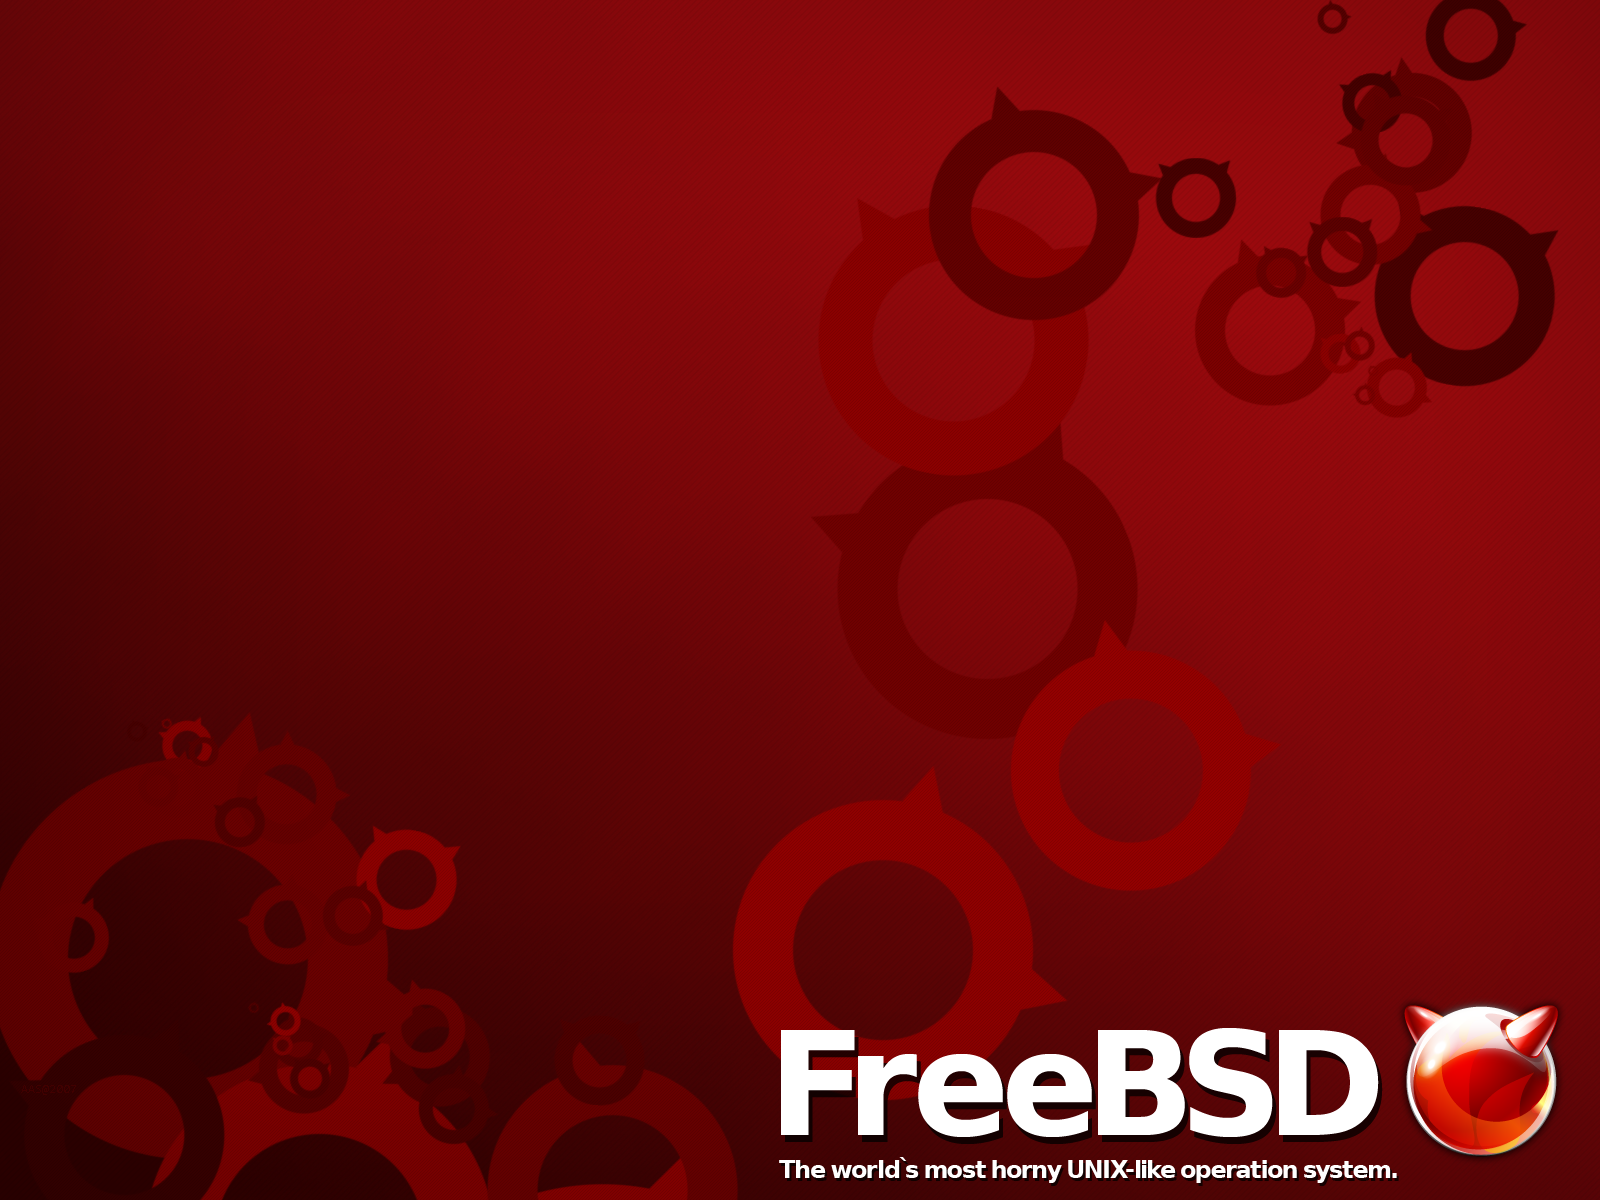 Risorsa grafica - foto, screenshot o immagine in genere - relativa ai contenuti pubblicati da unixzone.it | Nome immagine: news27174_FreeBSD_1.png